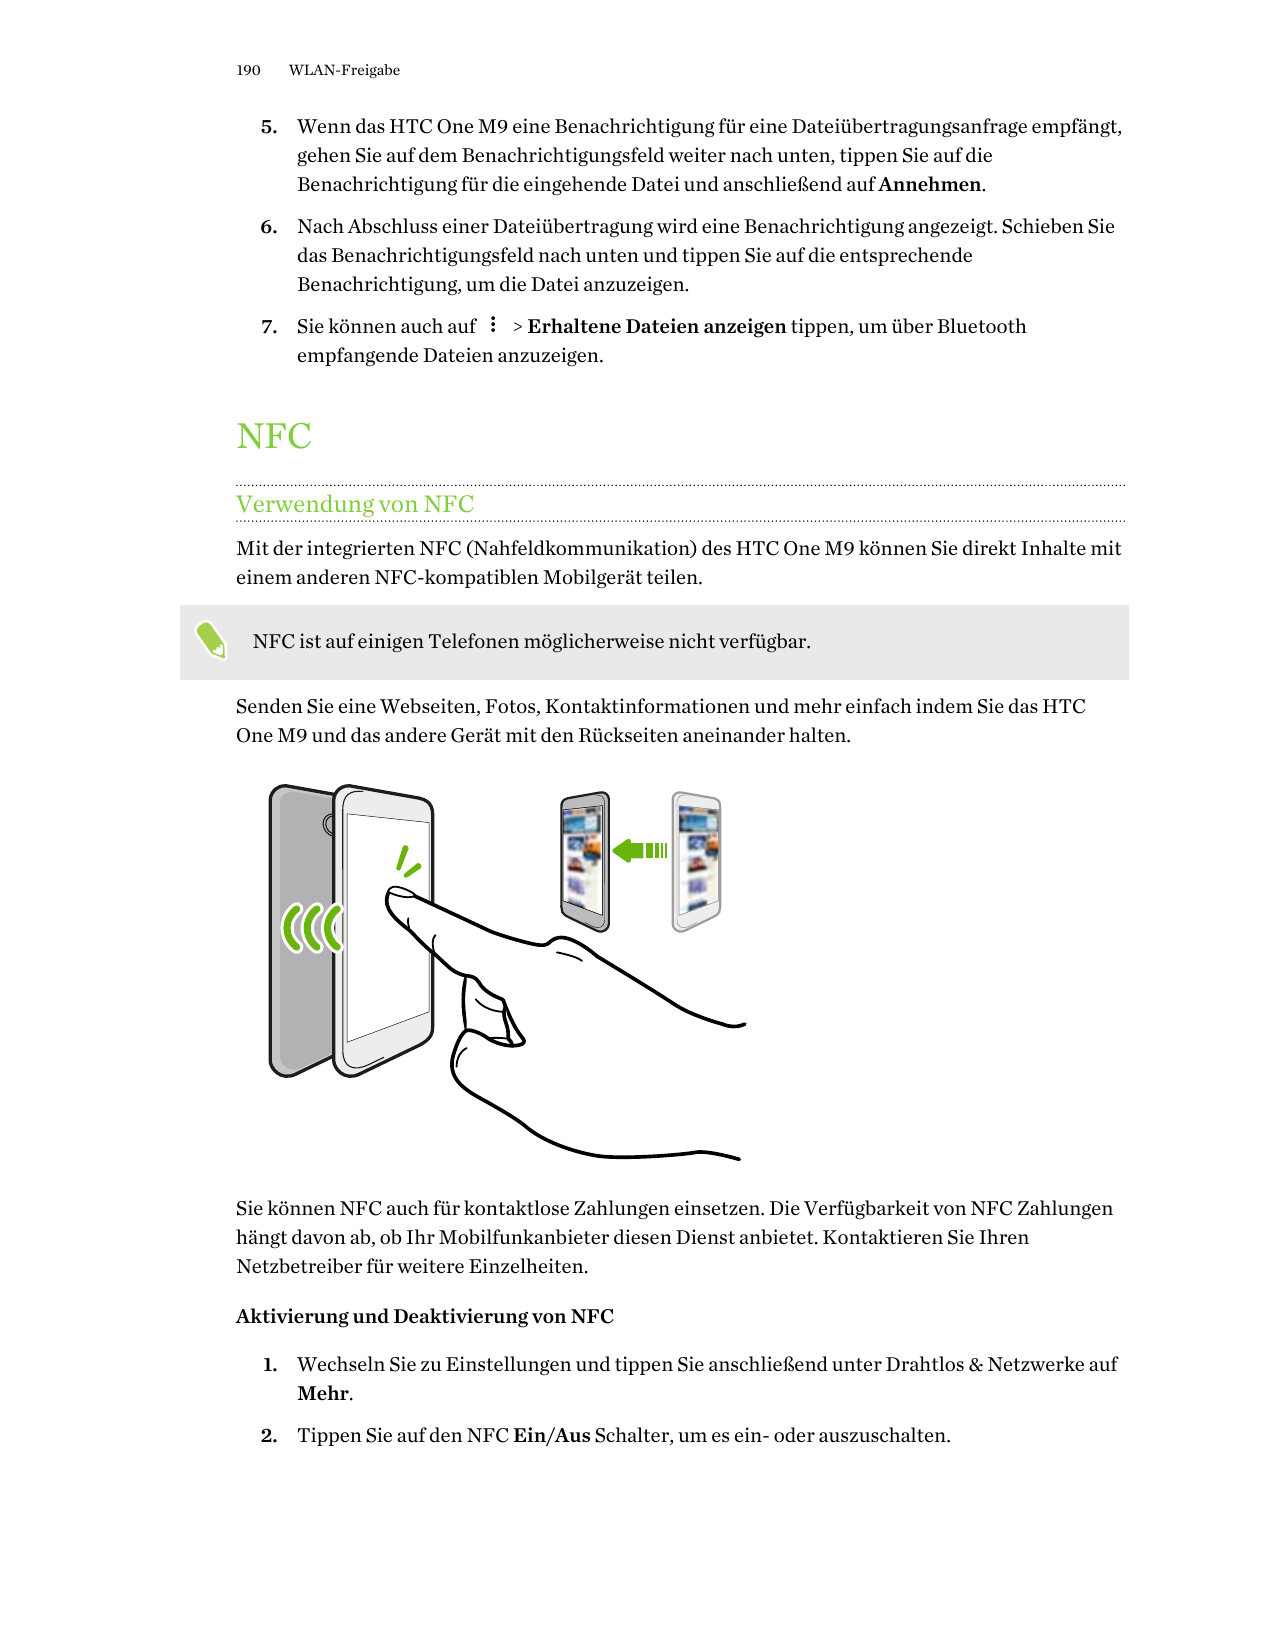 190WLAN-Freigabe5. Wenn das HTC One M9 eine Benachrichtigung für eine Dateiübertragungsanfrage empfängt,gehen Sie auf dem Benach